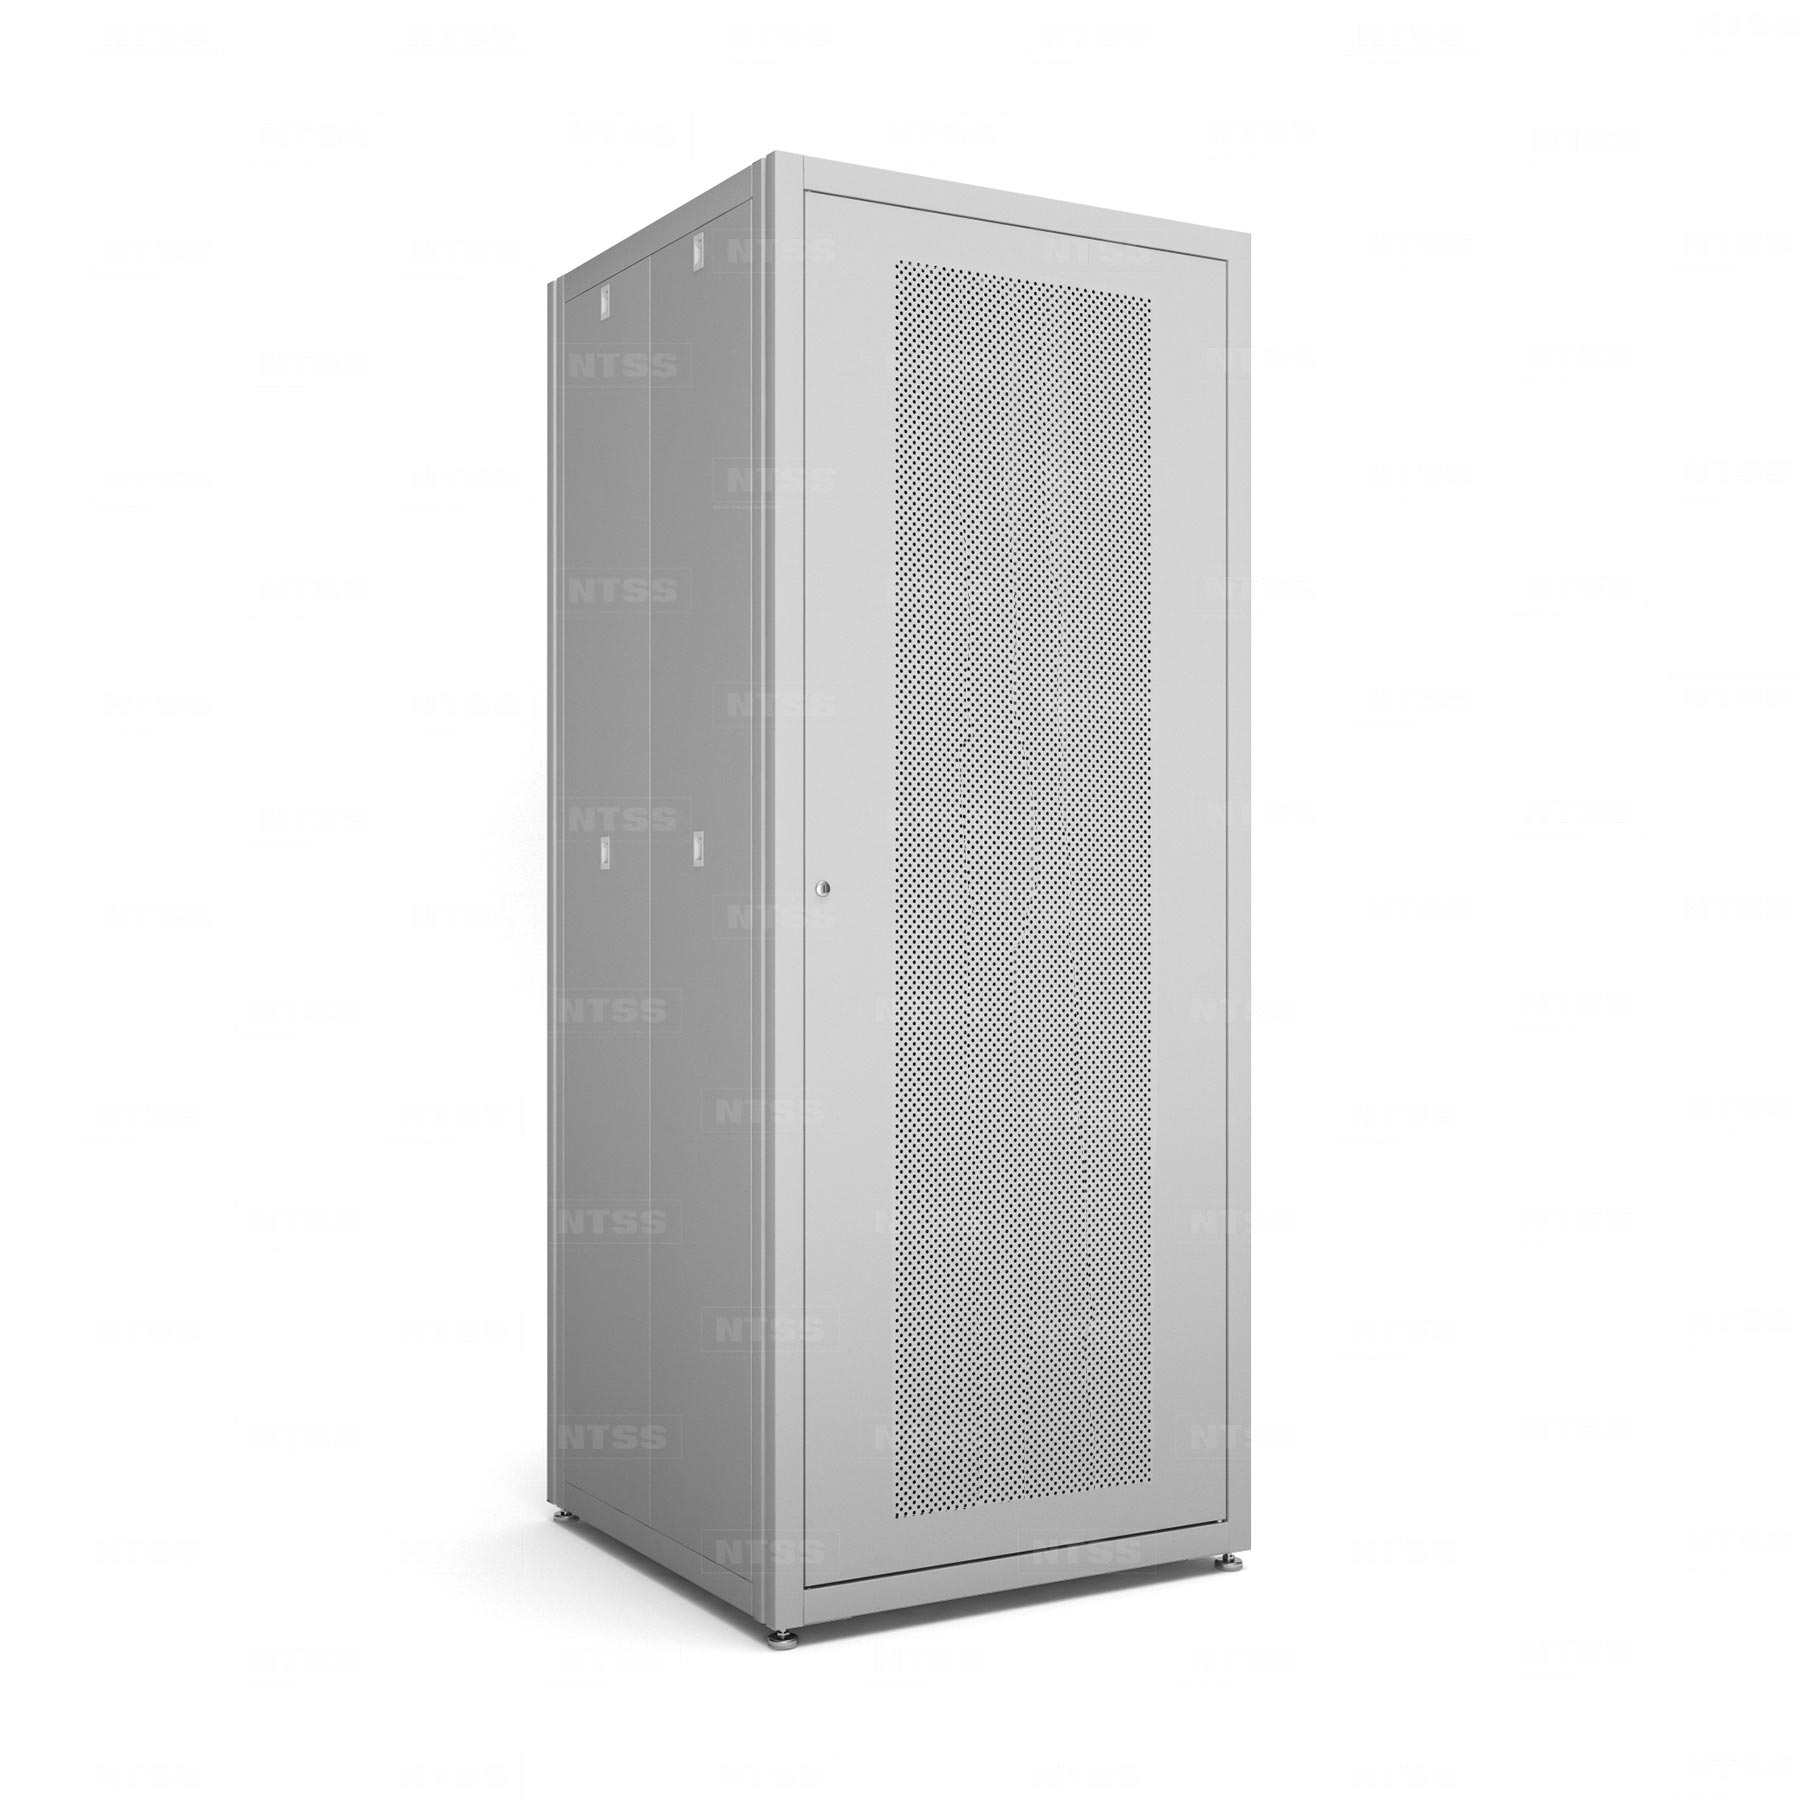 19" напольный шкаф "СТАНДАРТ" 42U 800x800 мм, передняя дверь перфорация, боковые стенки съемные 